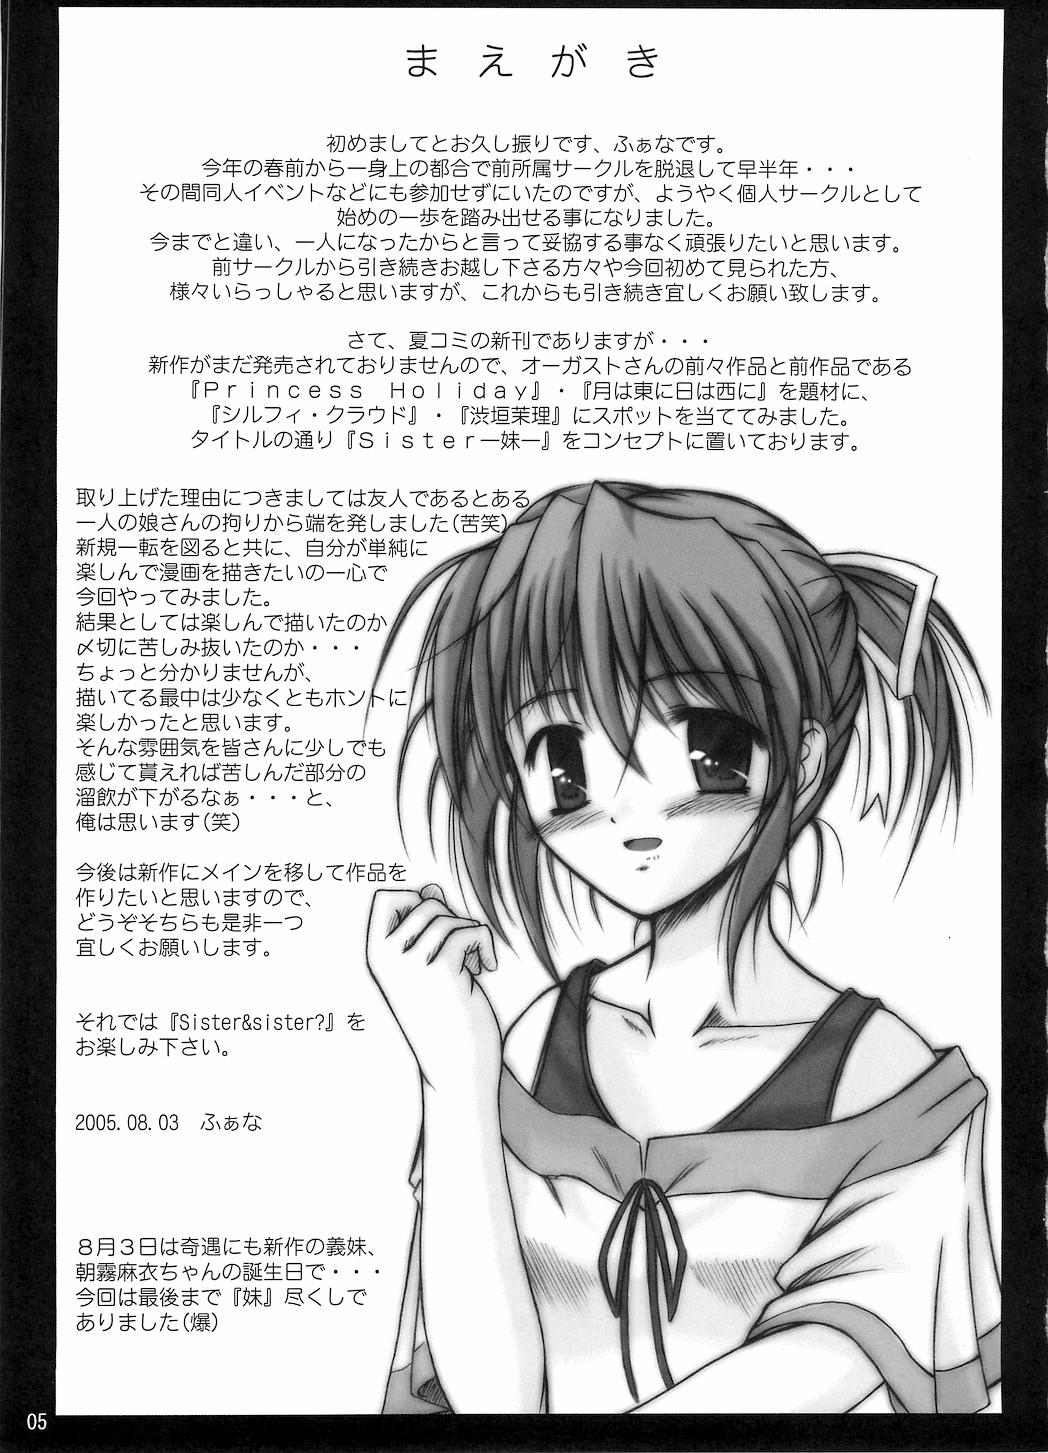 Cfnm Sister & sister? - Tsuki wa higashi ni hi wa nishi ni Princess holiday No Condom - Page 3